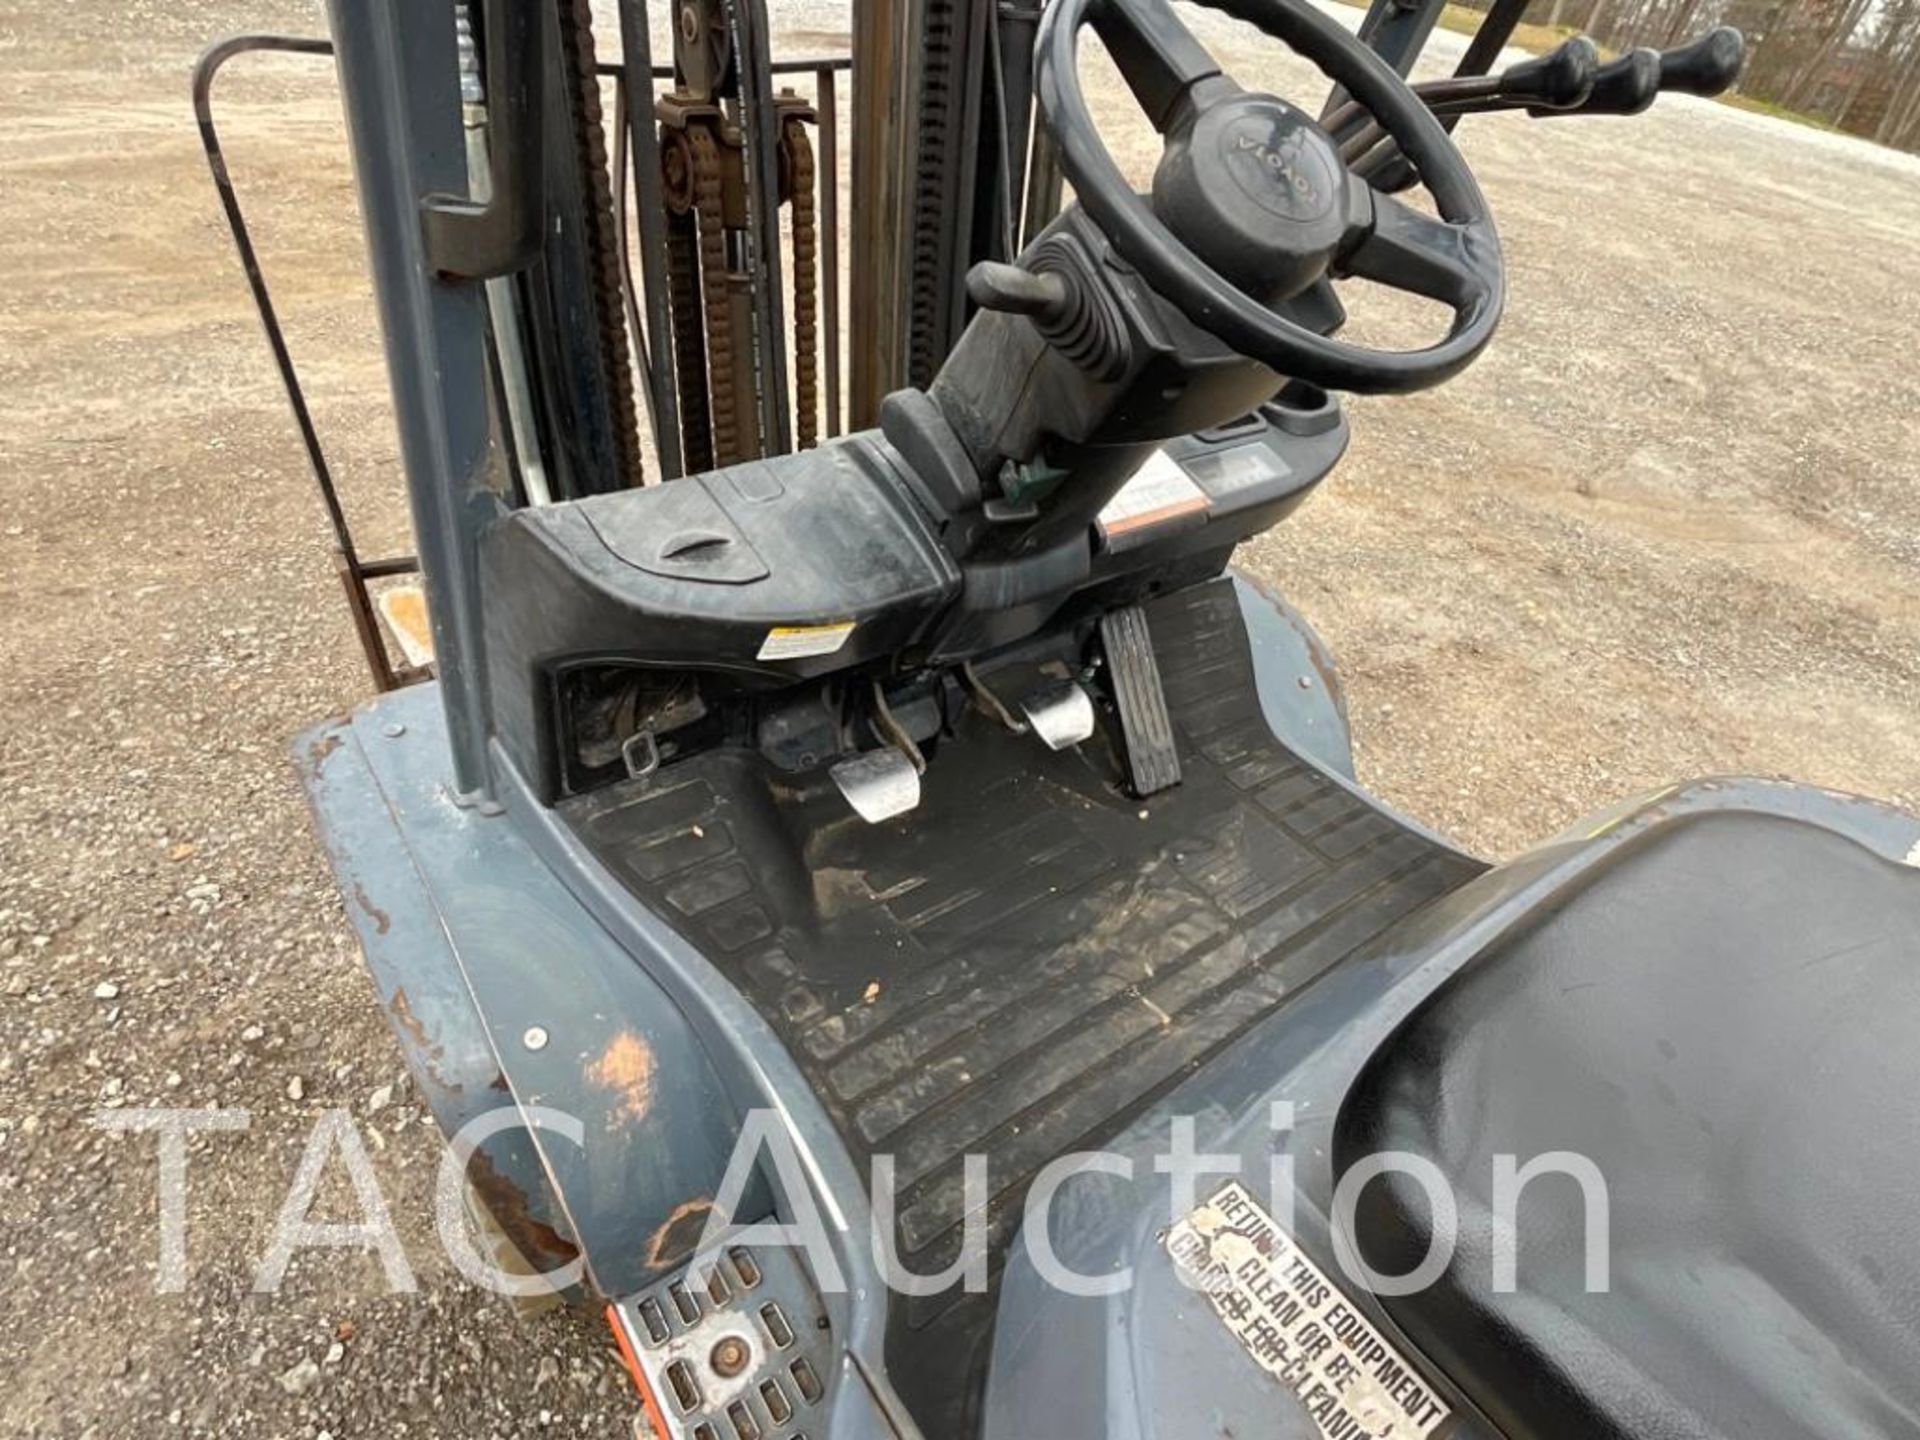 2015 Toyota 8FGU25 5000lb Forklift - Image 10 of 22